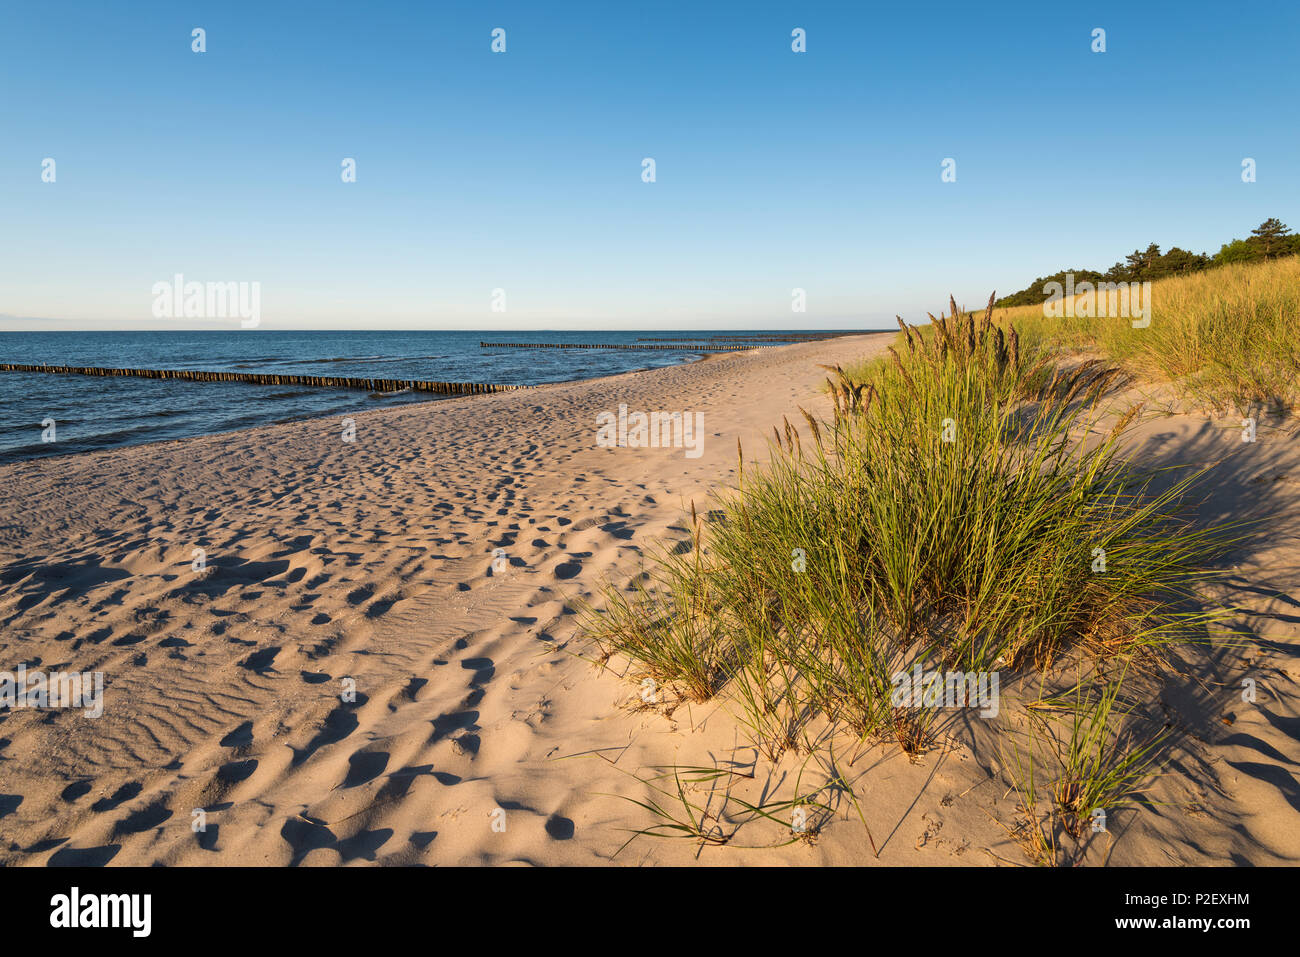 L'été, la plage, les dunes, la mer Baltique, Berlin, Germany, Europe Banque D'Images